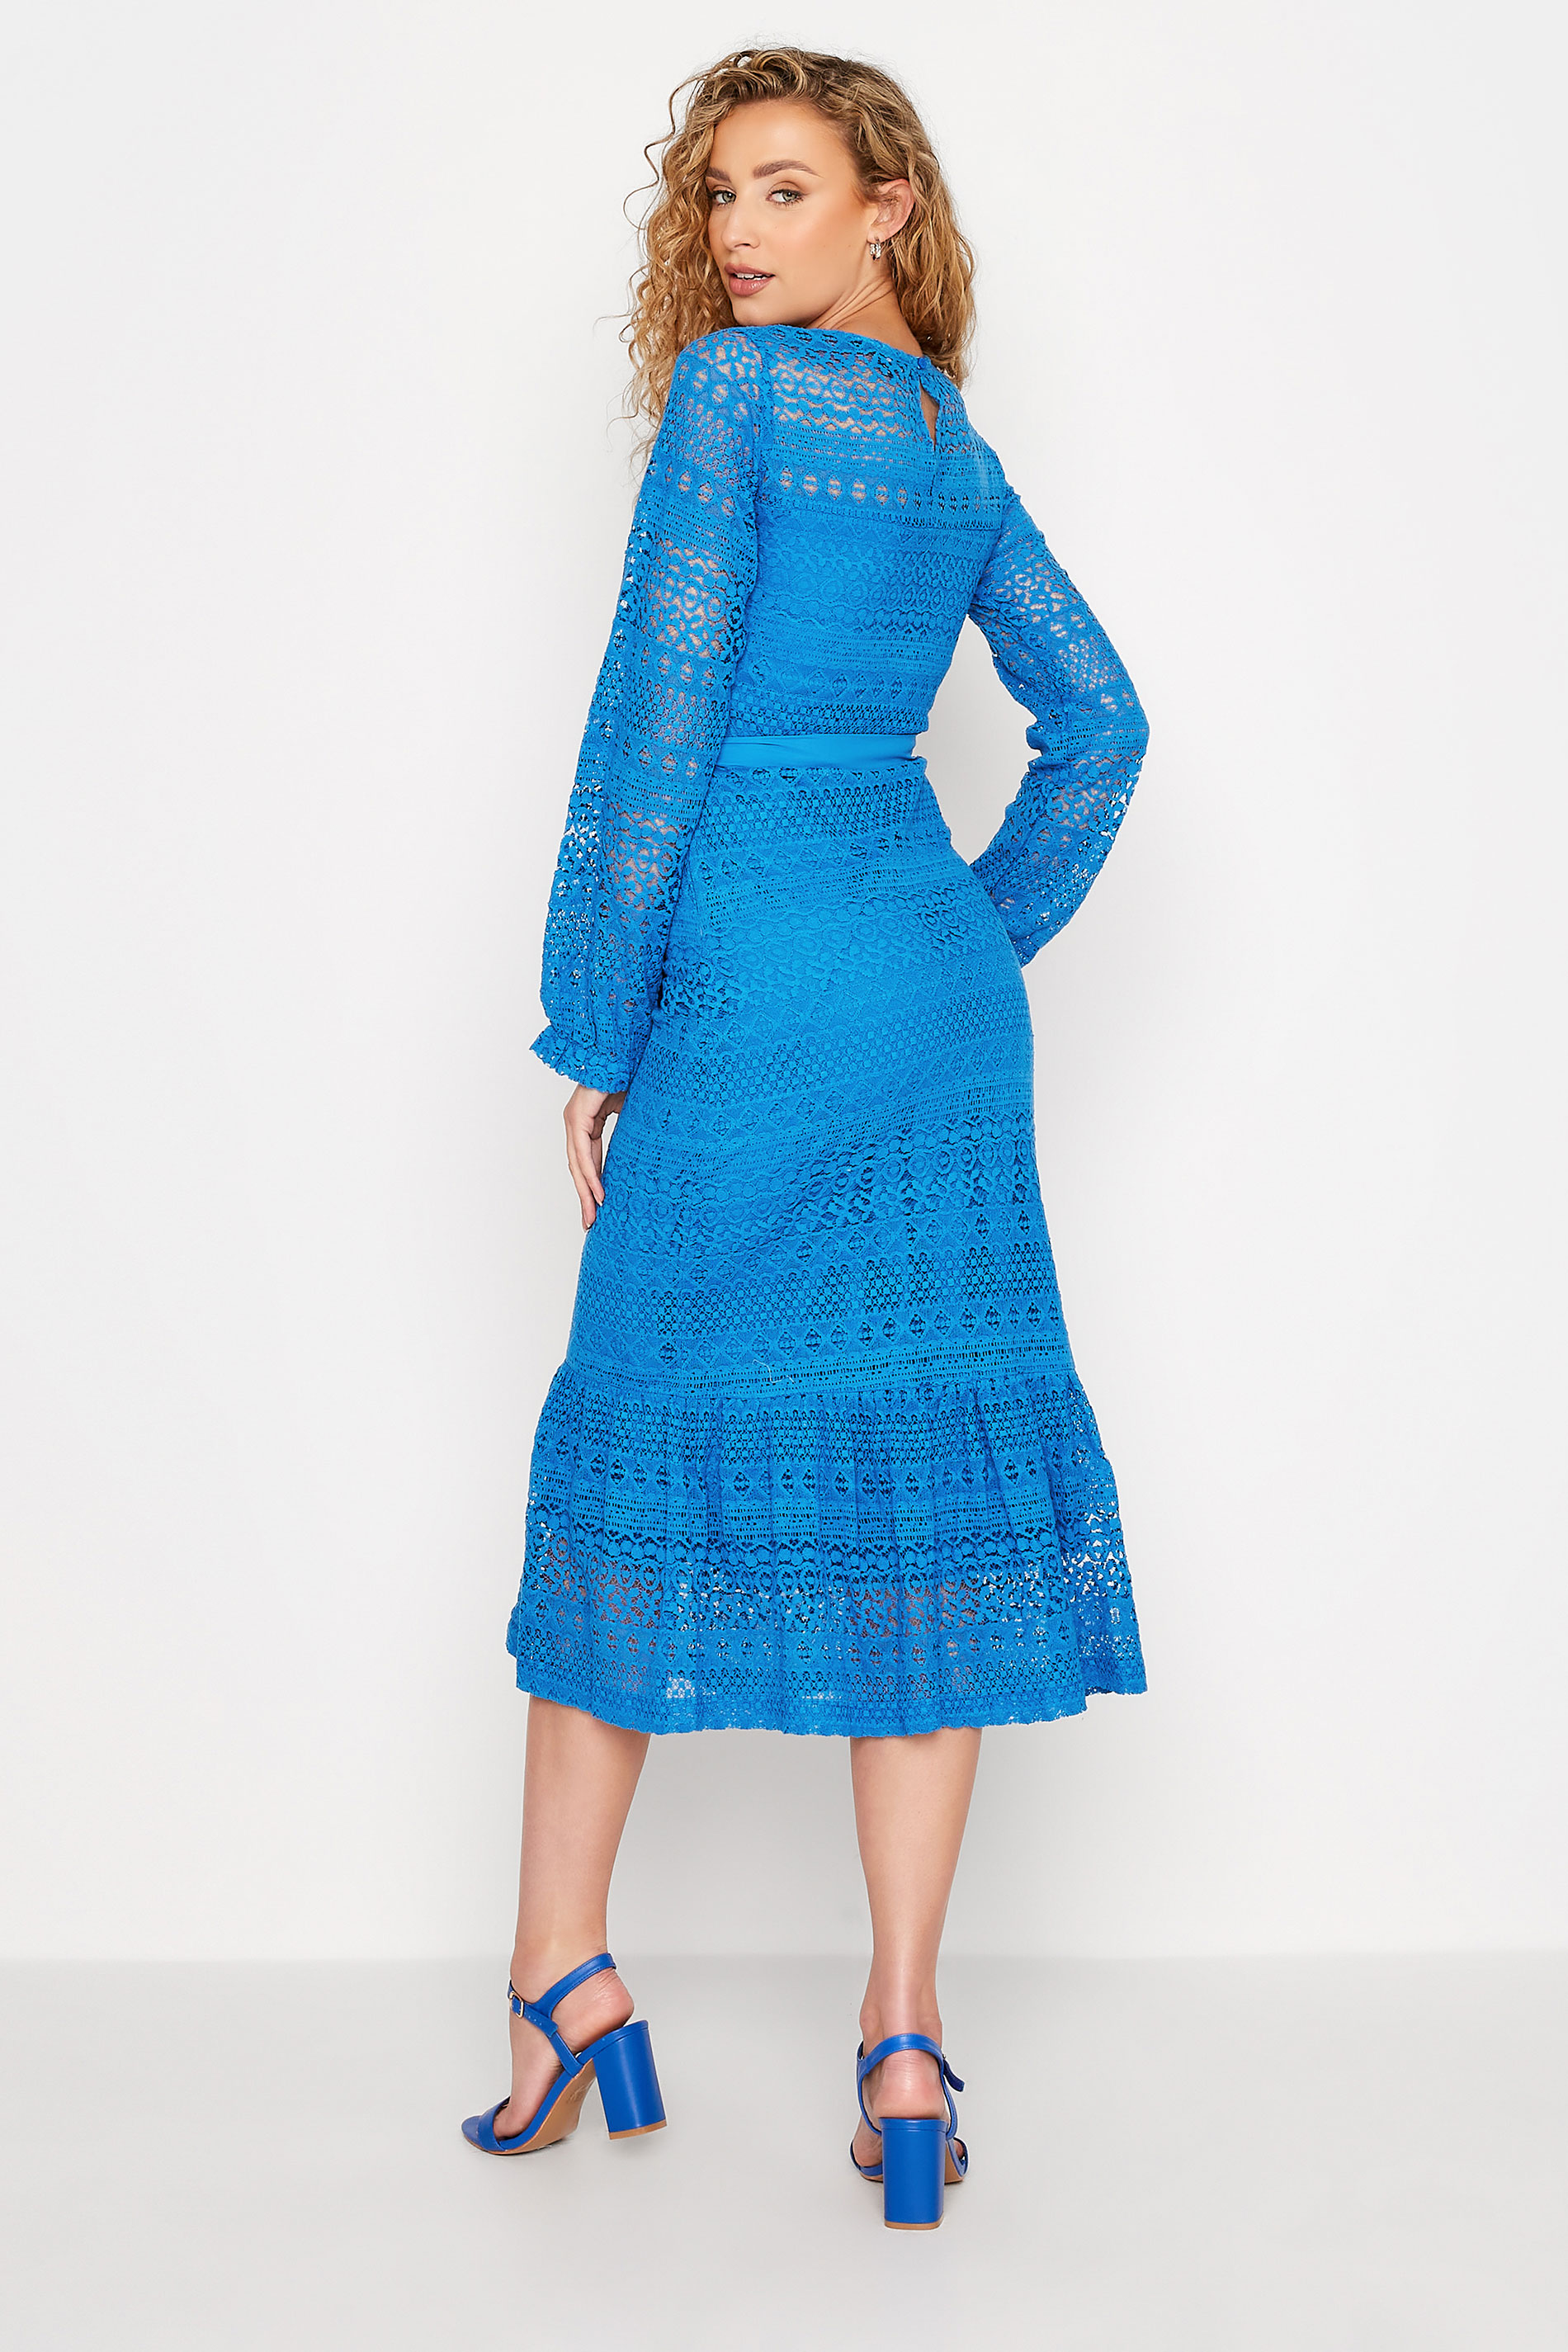 LTS Tall Women's Blue Lace Midi Dress | Long Tall Sally